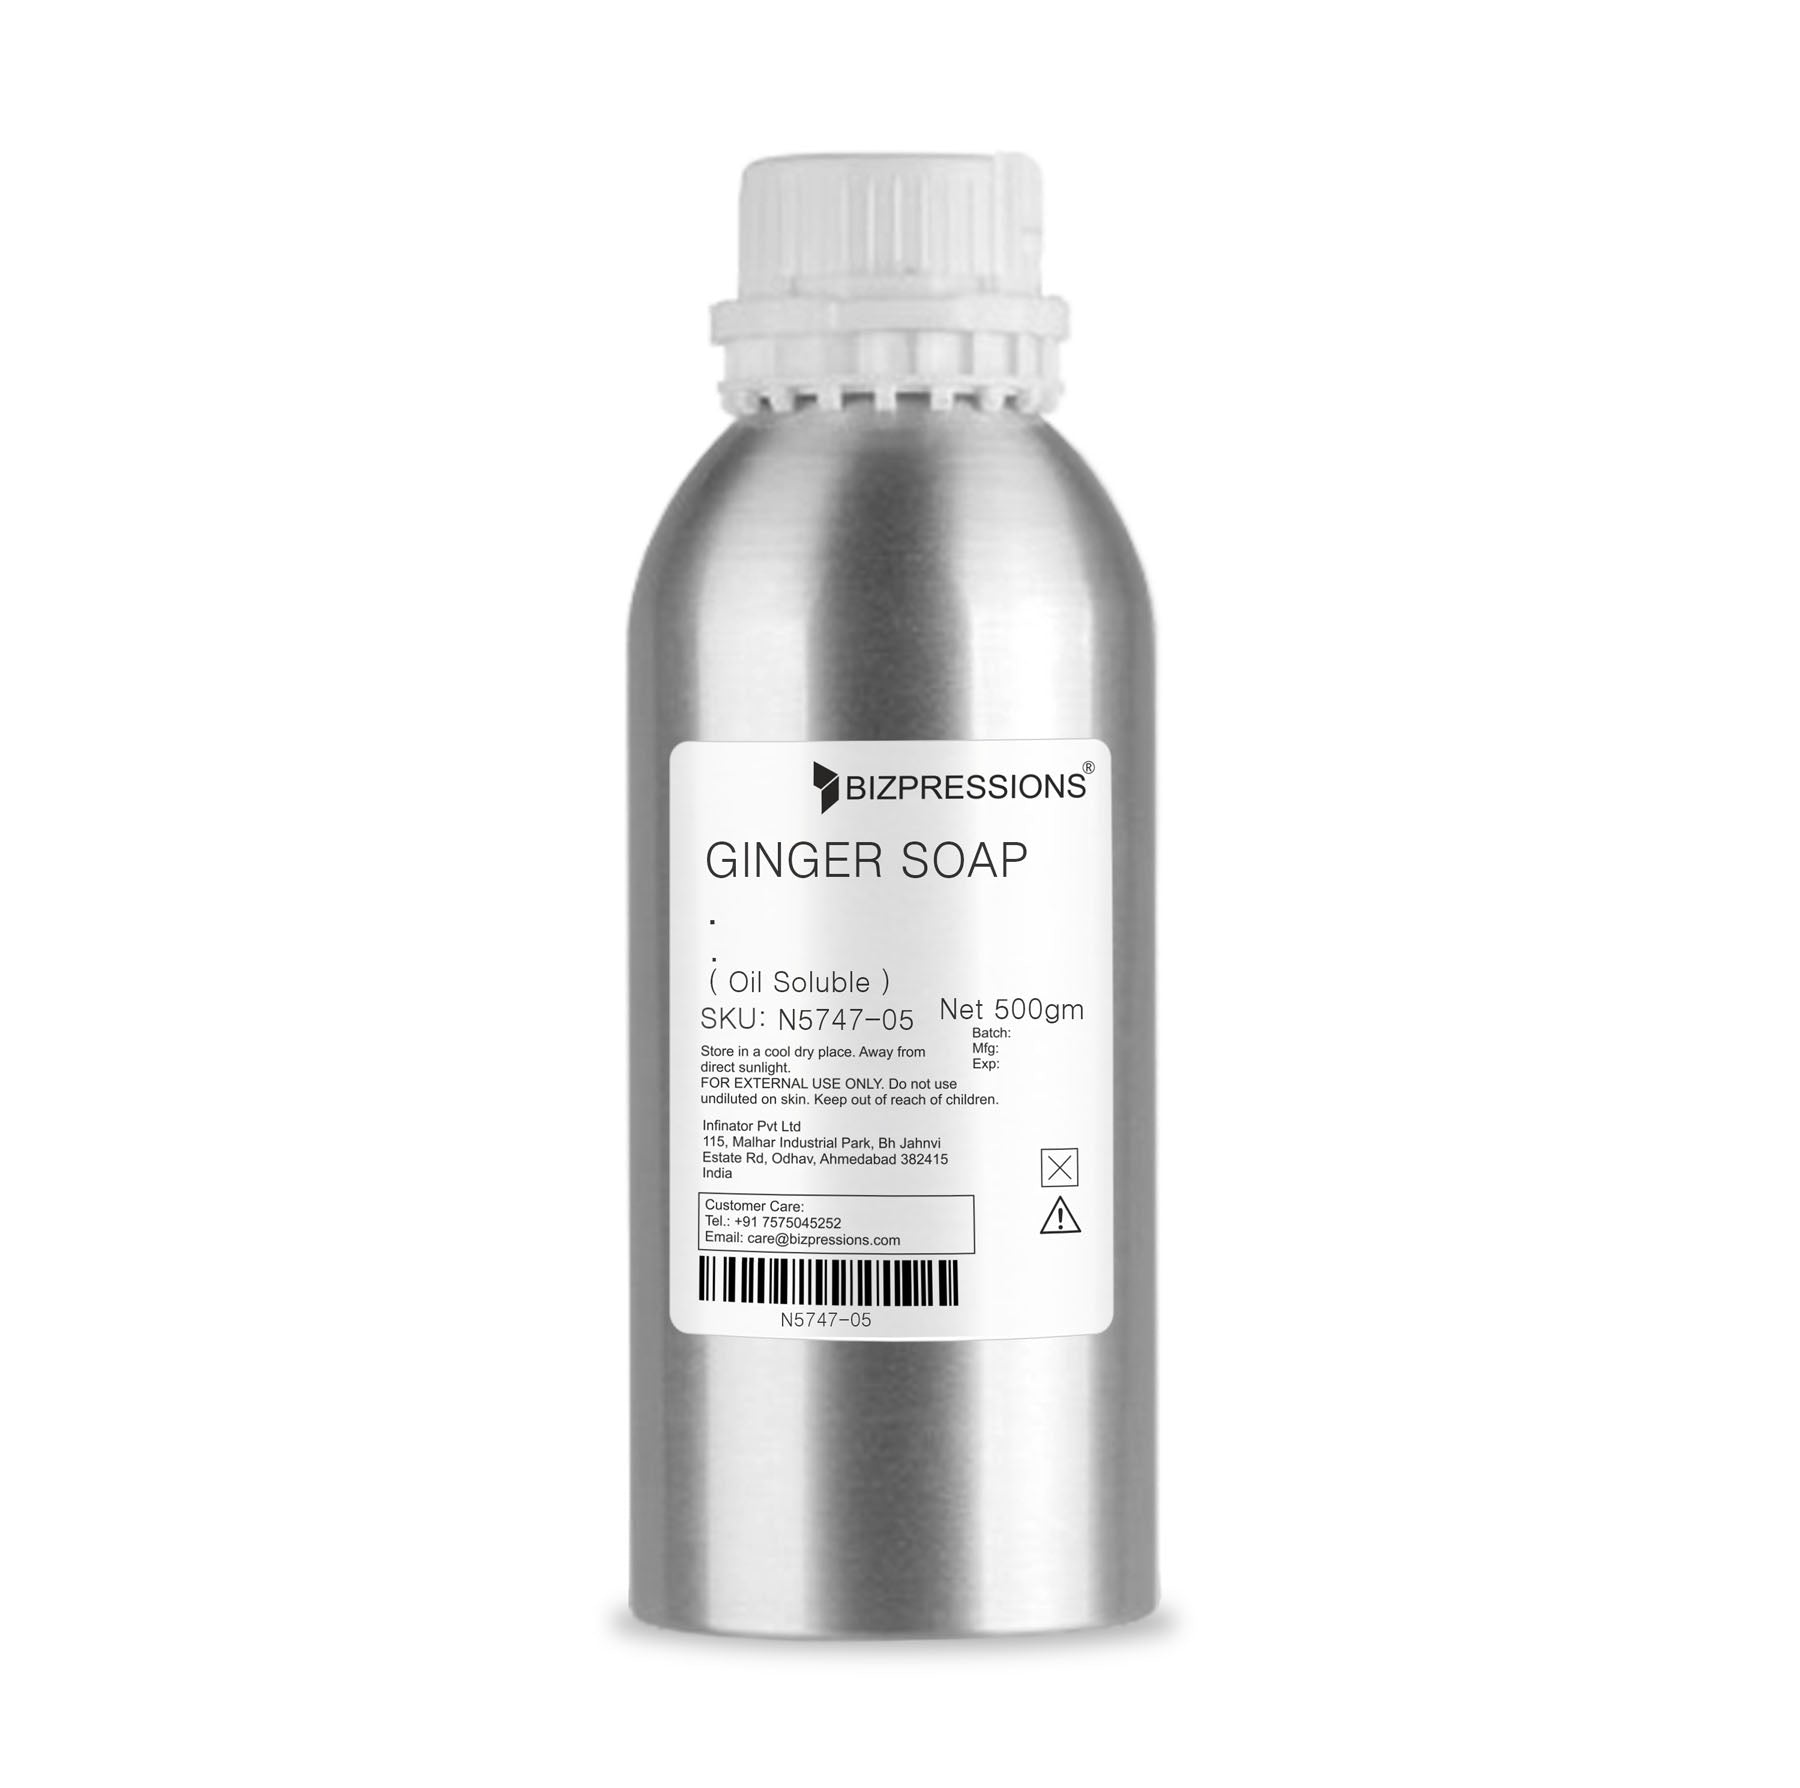 GINGER SOAP - Fragrance ( Oil Soluble ) - 500 gm